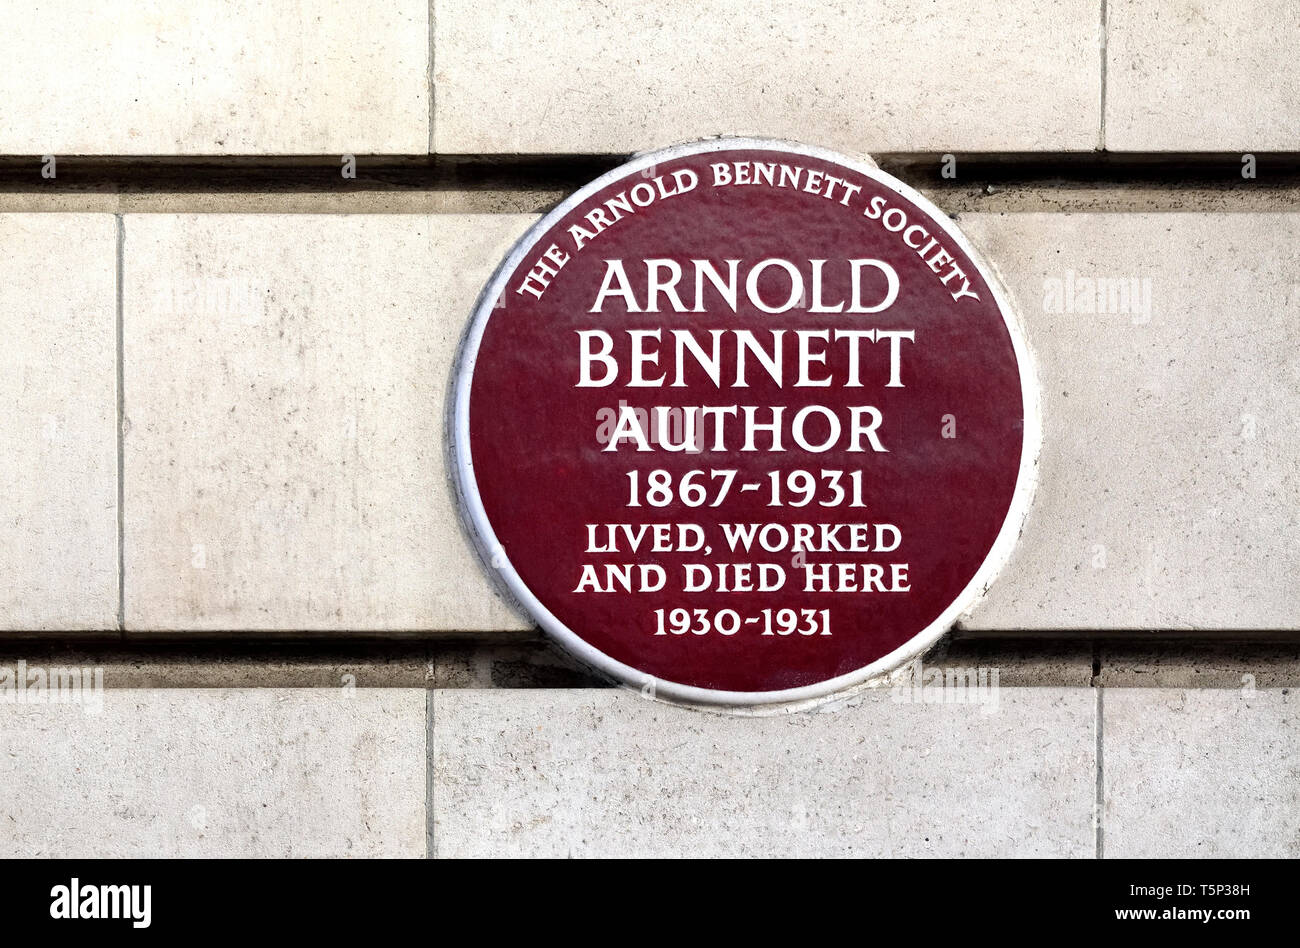 Londra, Inghilterra, Regno Unito. Blu Commemorative Plaque: Arnold Bennett autore 1867-1931 ha vissuto e lavorato qui morì 1930-1931. Chiltern corte, Baker Street Foto Stock